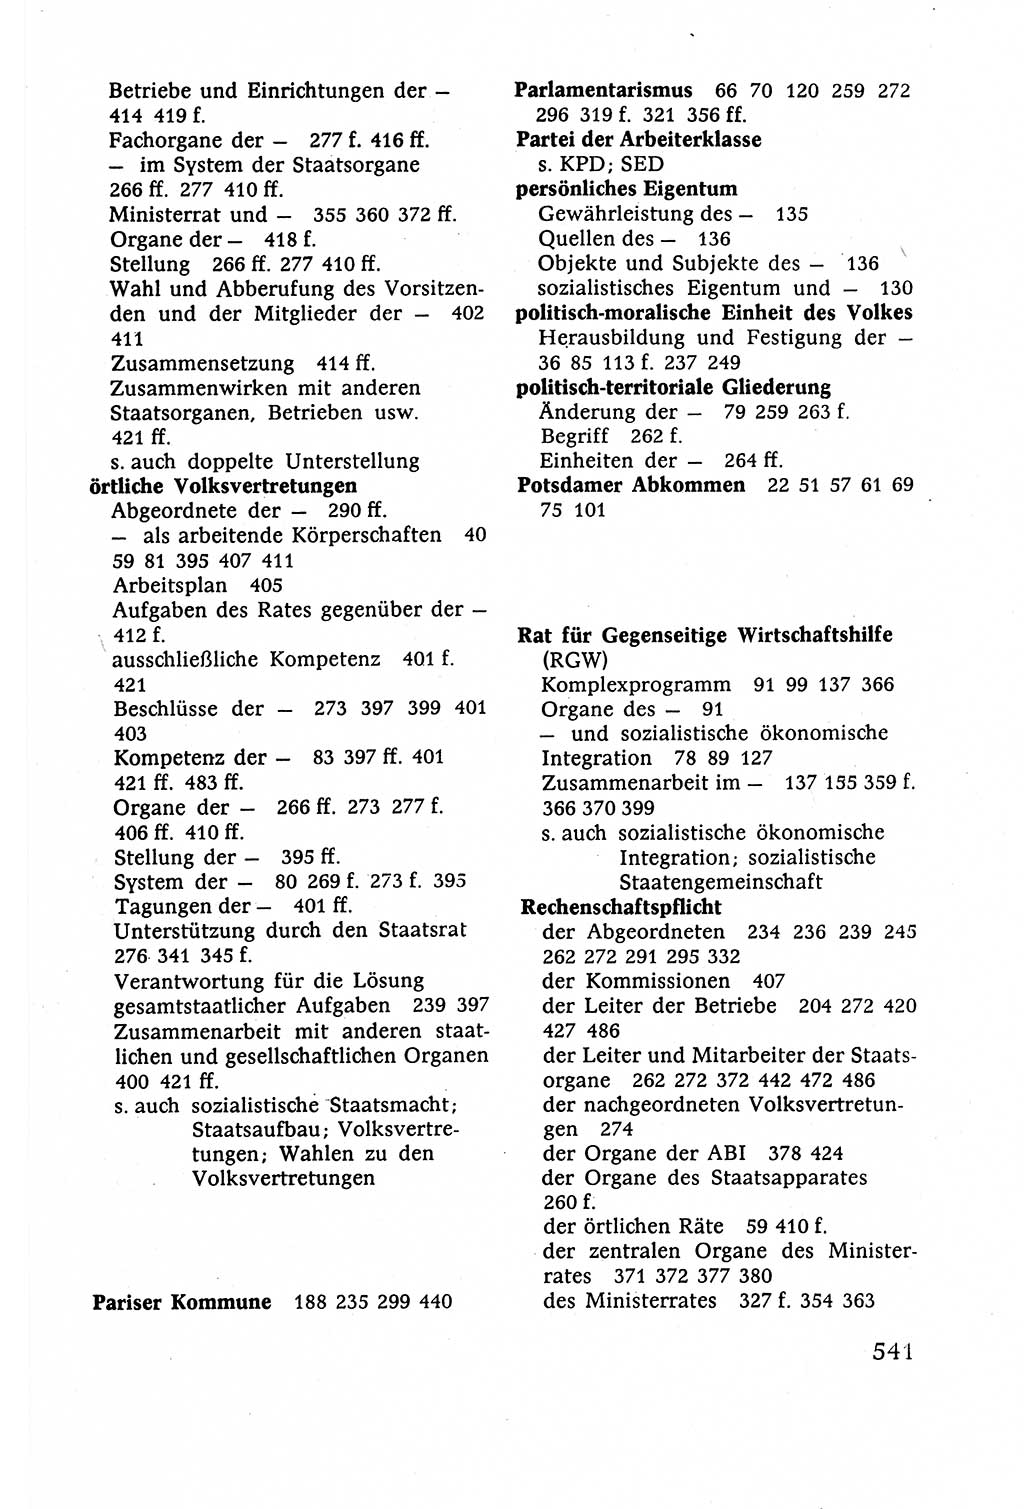 Staatsrecht der DDR (Deutsche Demokratische Republik), Lehrbuch 1977, Seite 541 (St.-R. DDR Lb. 1977, S. 541)